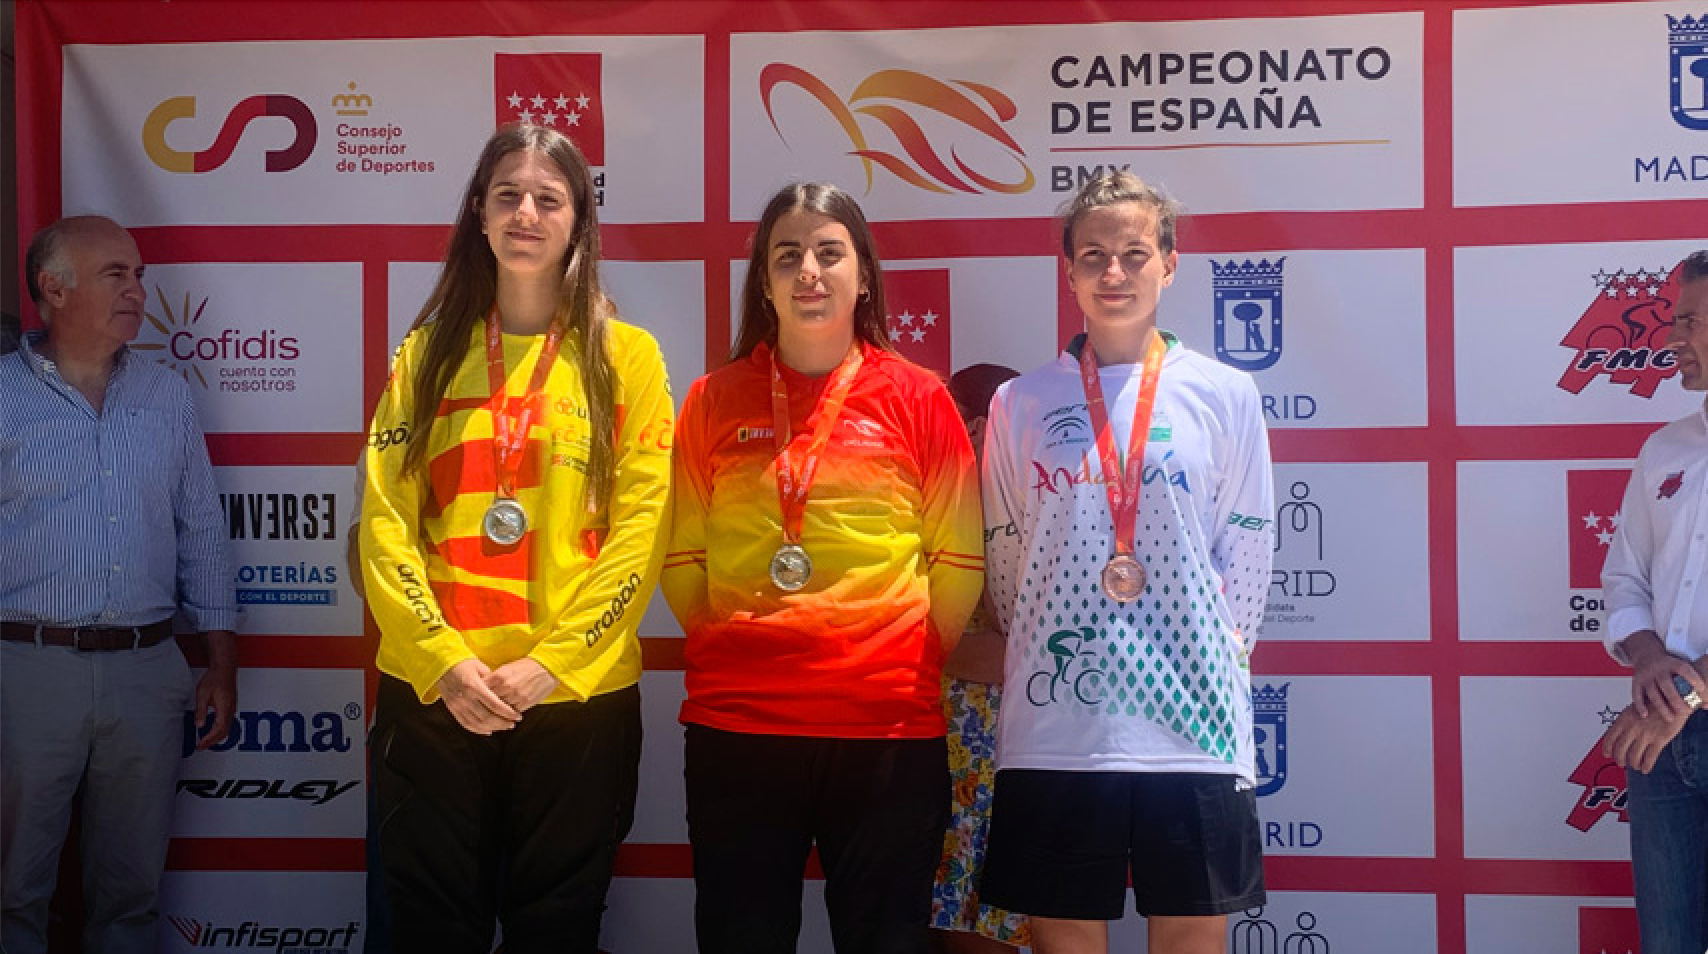 Lara-Palacio-vuelve-a-casa-con-un-doblete-Campeona-de-Espana-Junior-fem-y-Challenge-Open17